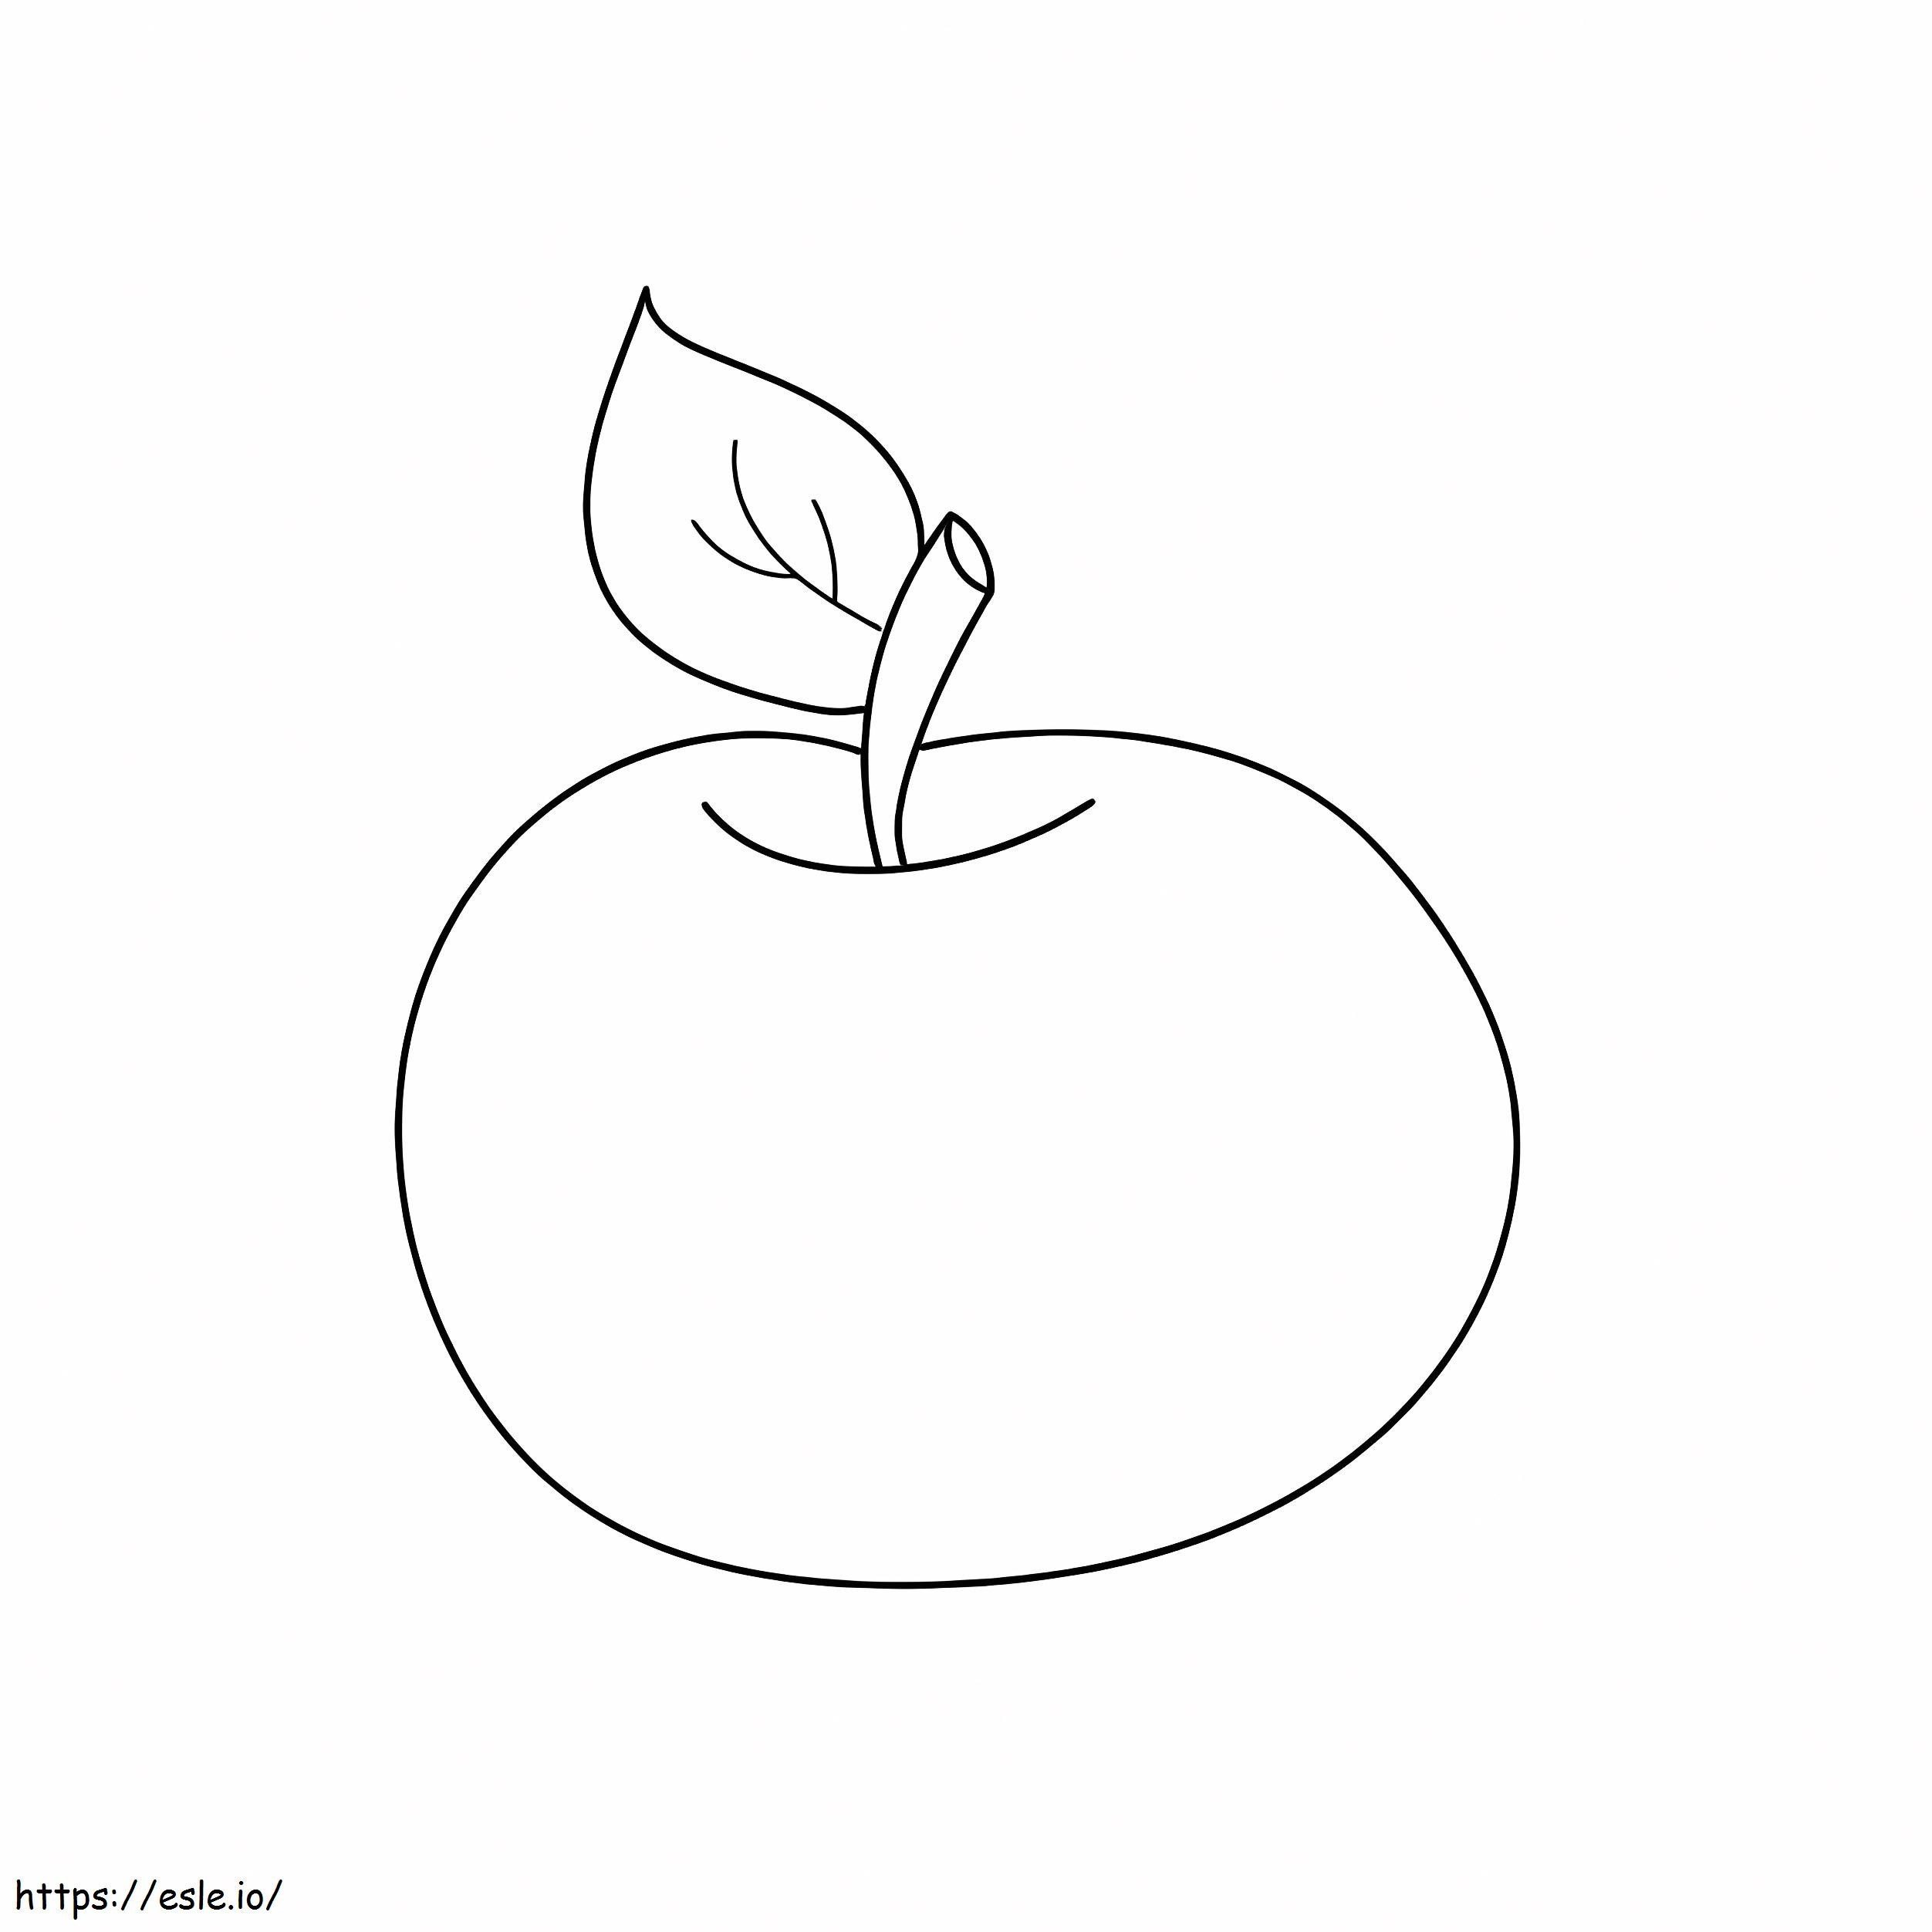 Coloriage Idée gratuite Apple à imprimer dessin